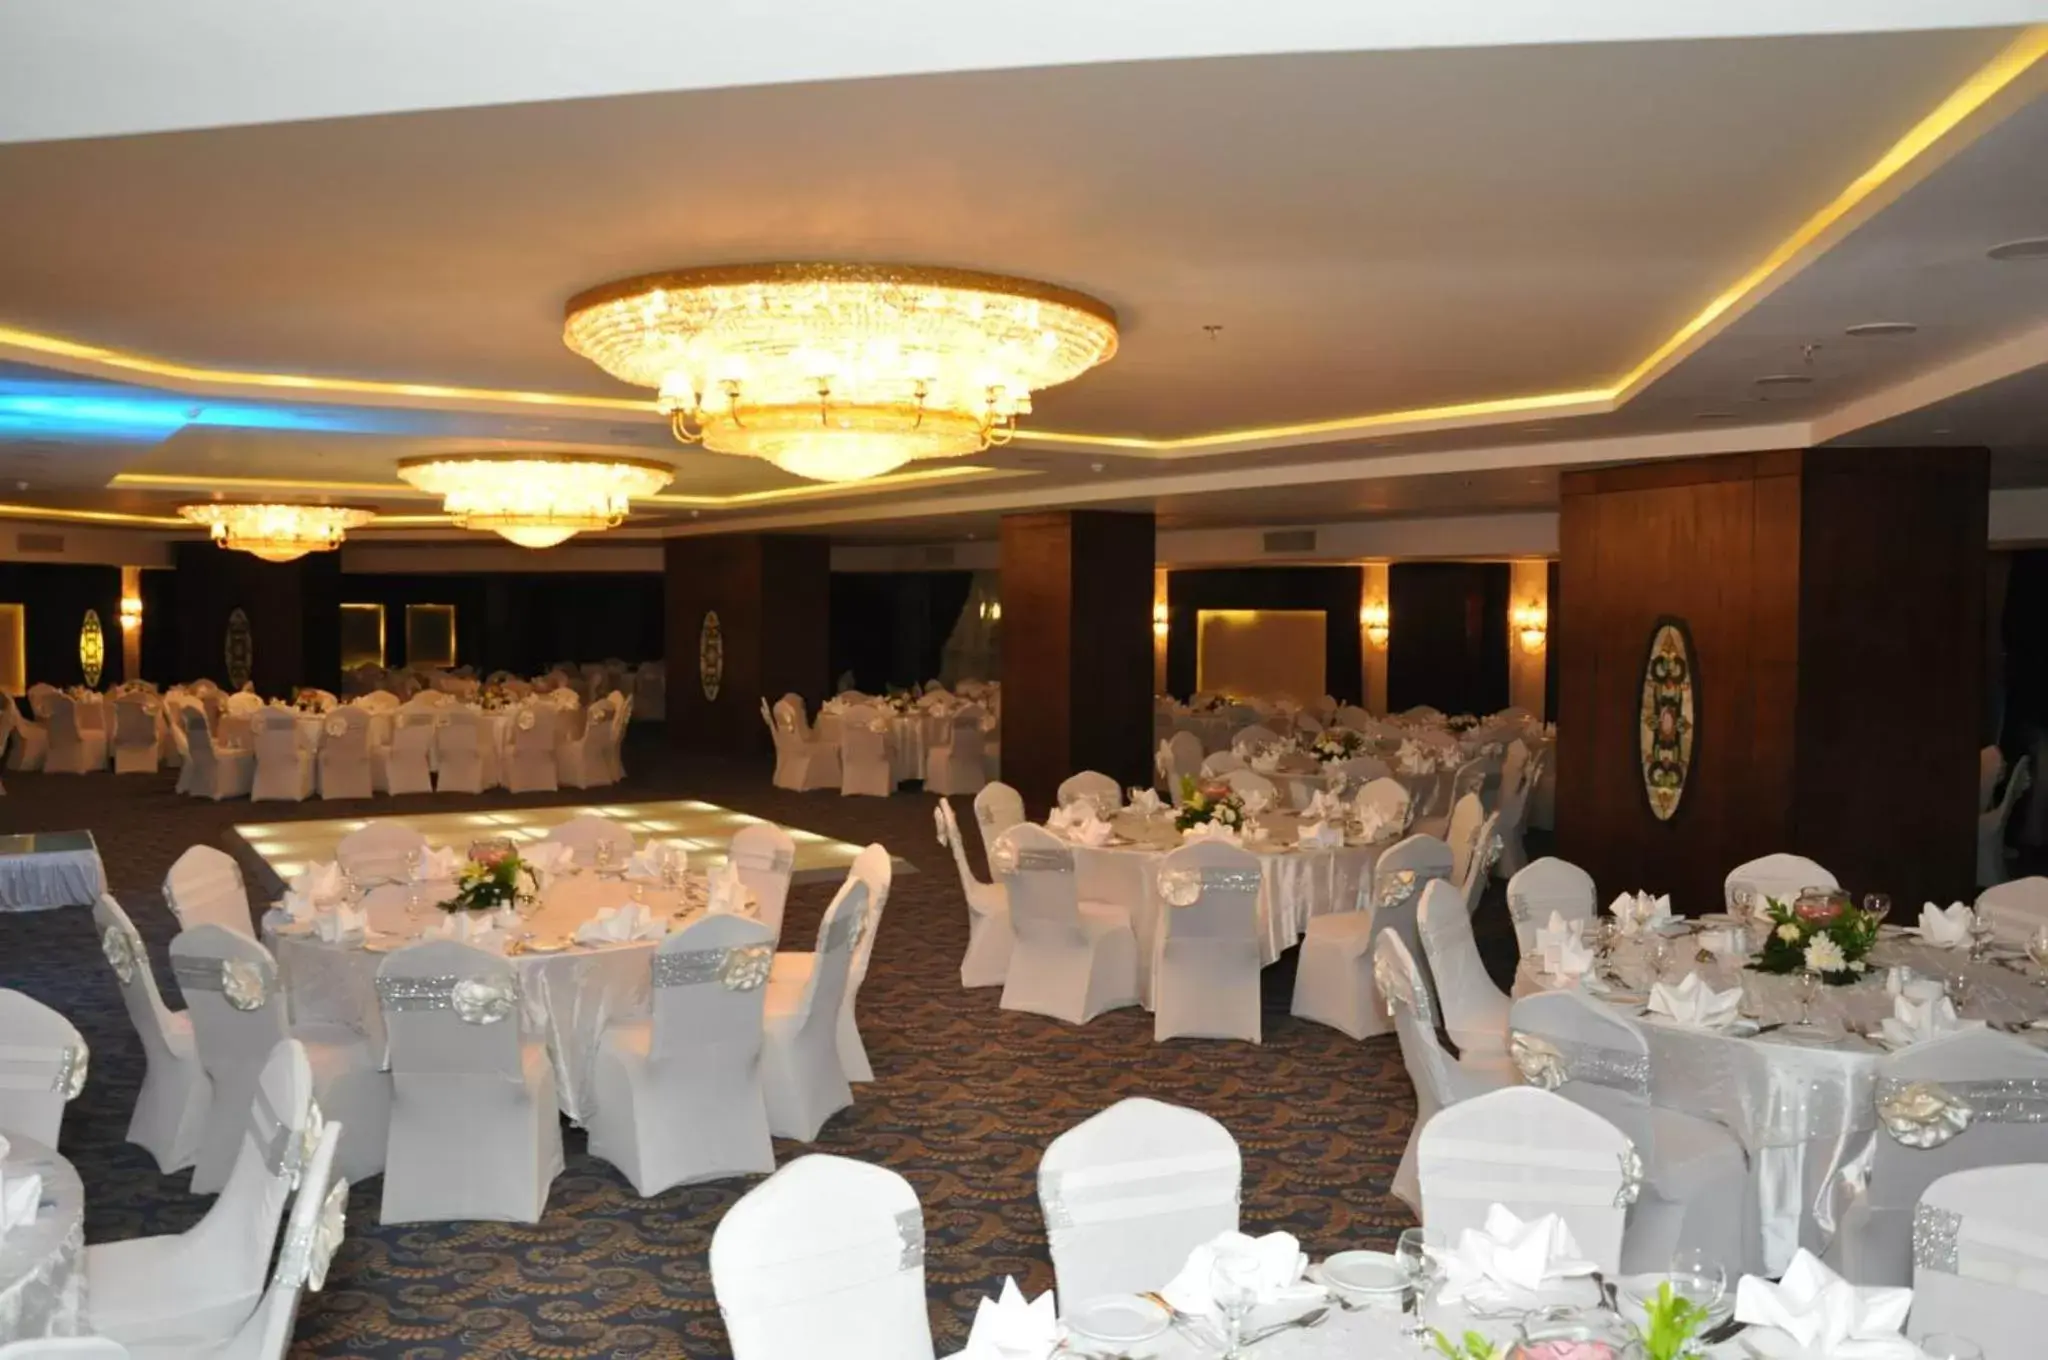 Banquet/Function facilities, Banquet Facilities in Tolip El Galaa Hotel Cairo